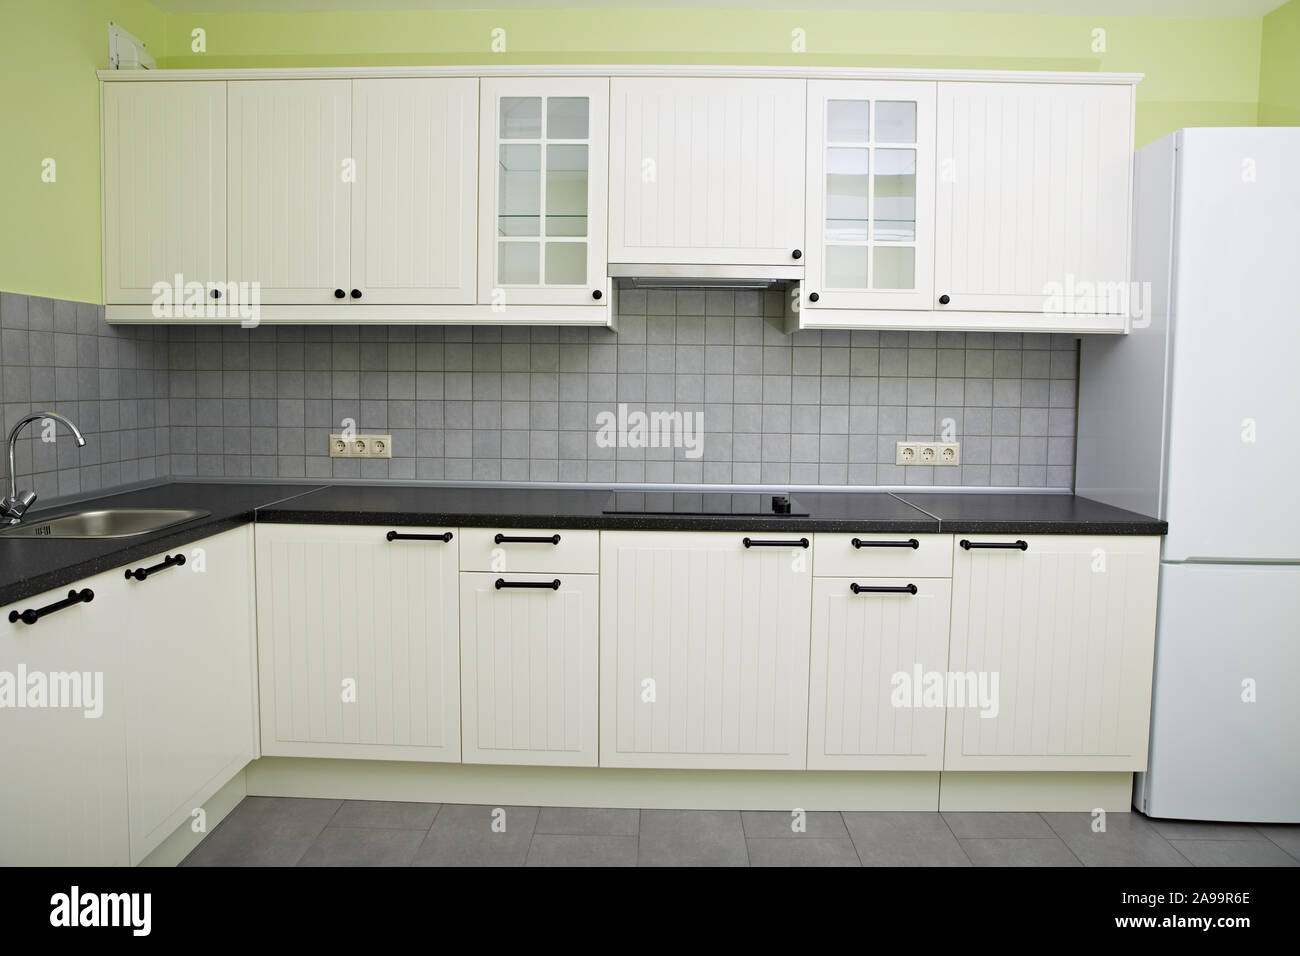 Moderna cucina bianca nell'appartamento. Frigorifero, piano cottura, lavello con rubinetto. Foto Stock